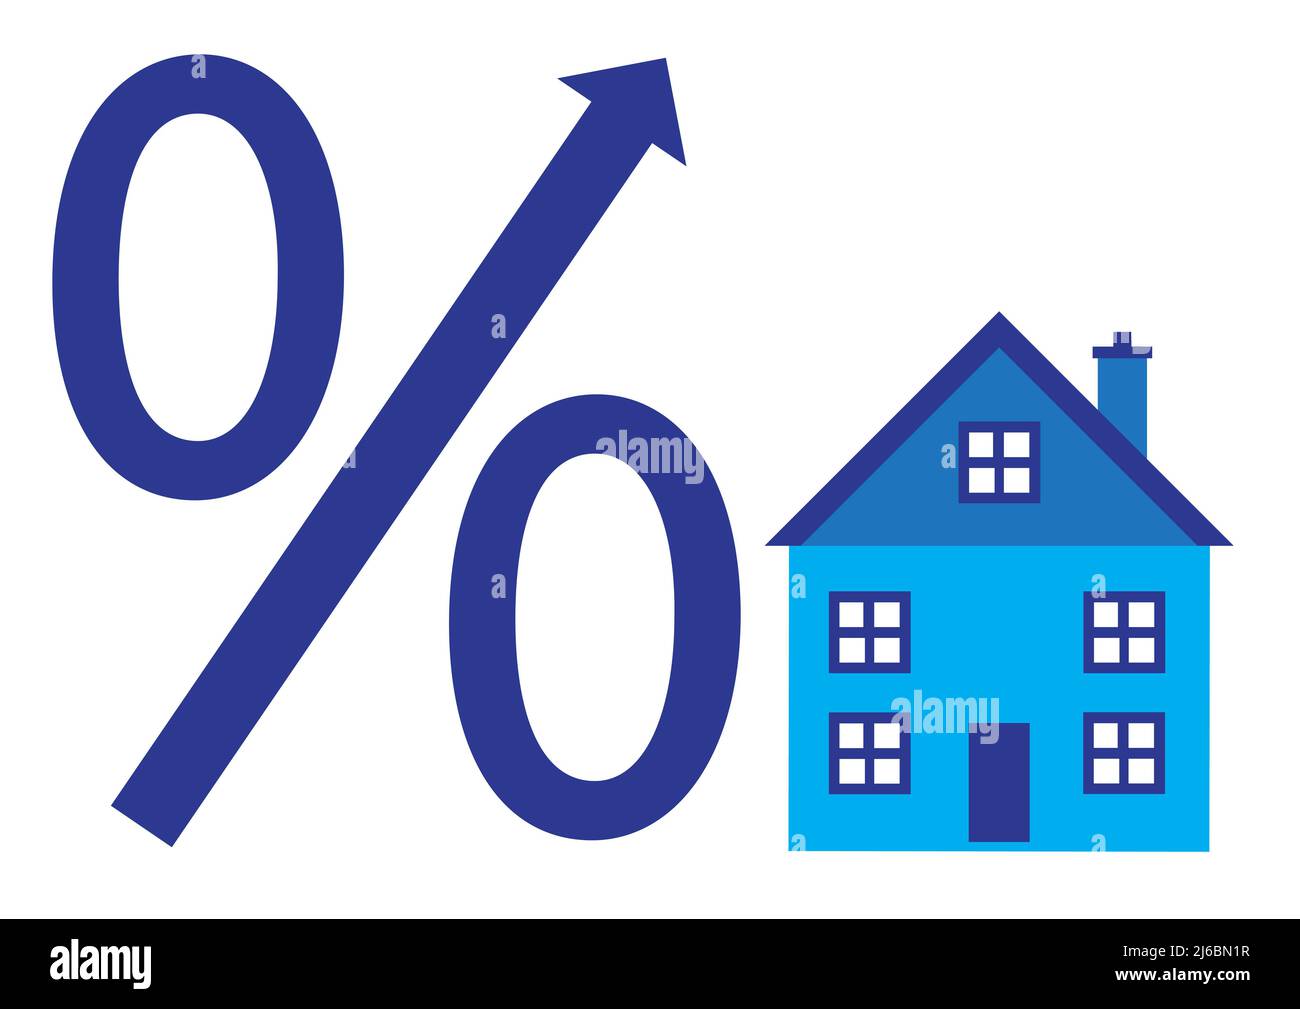 Ein Beispiel für steigende Zinssätze auf dem Immobilienmarkt in Bezug auf Finanzierungskosten, Hypothekenerhöhungen und Preiserhöhungen. Stockfoto